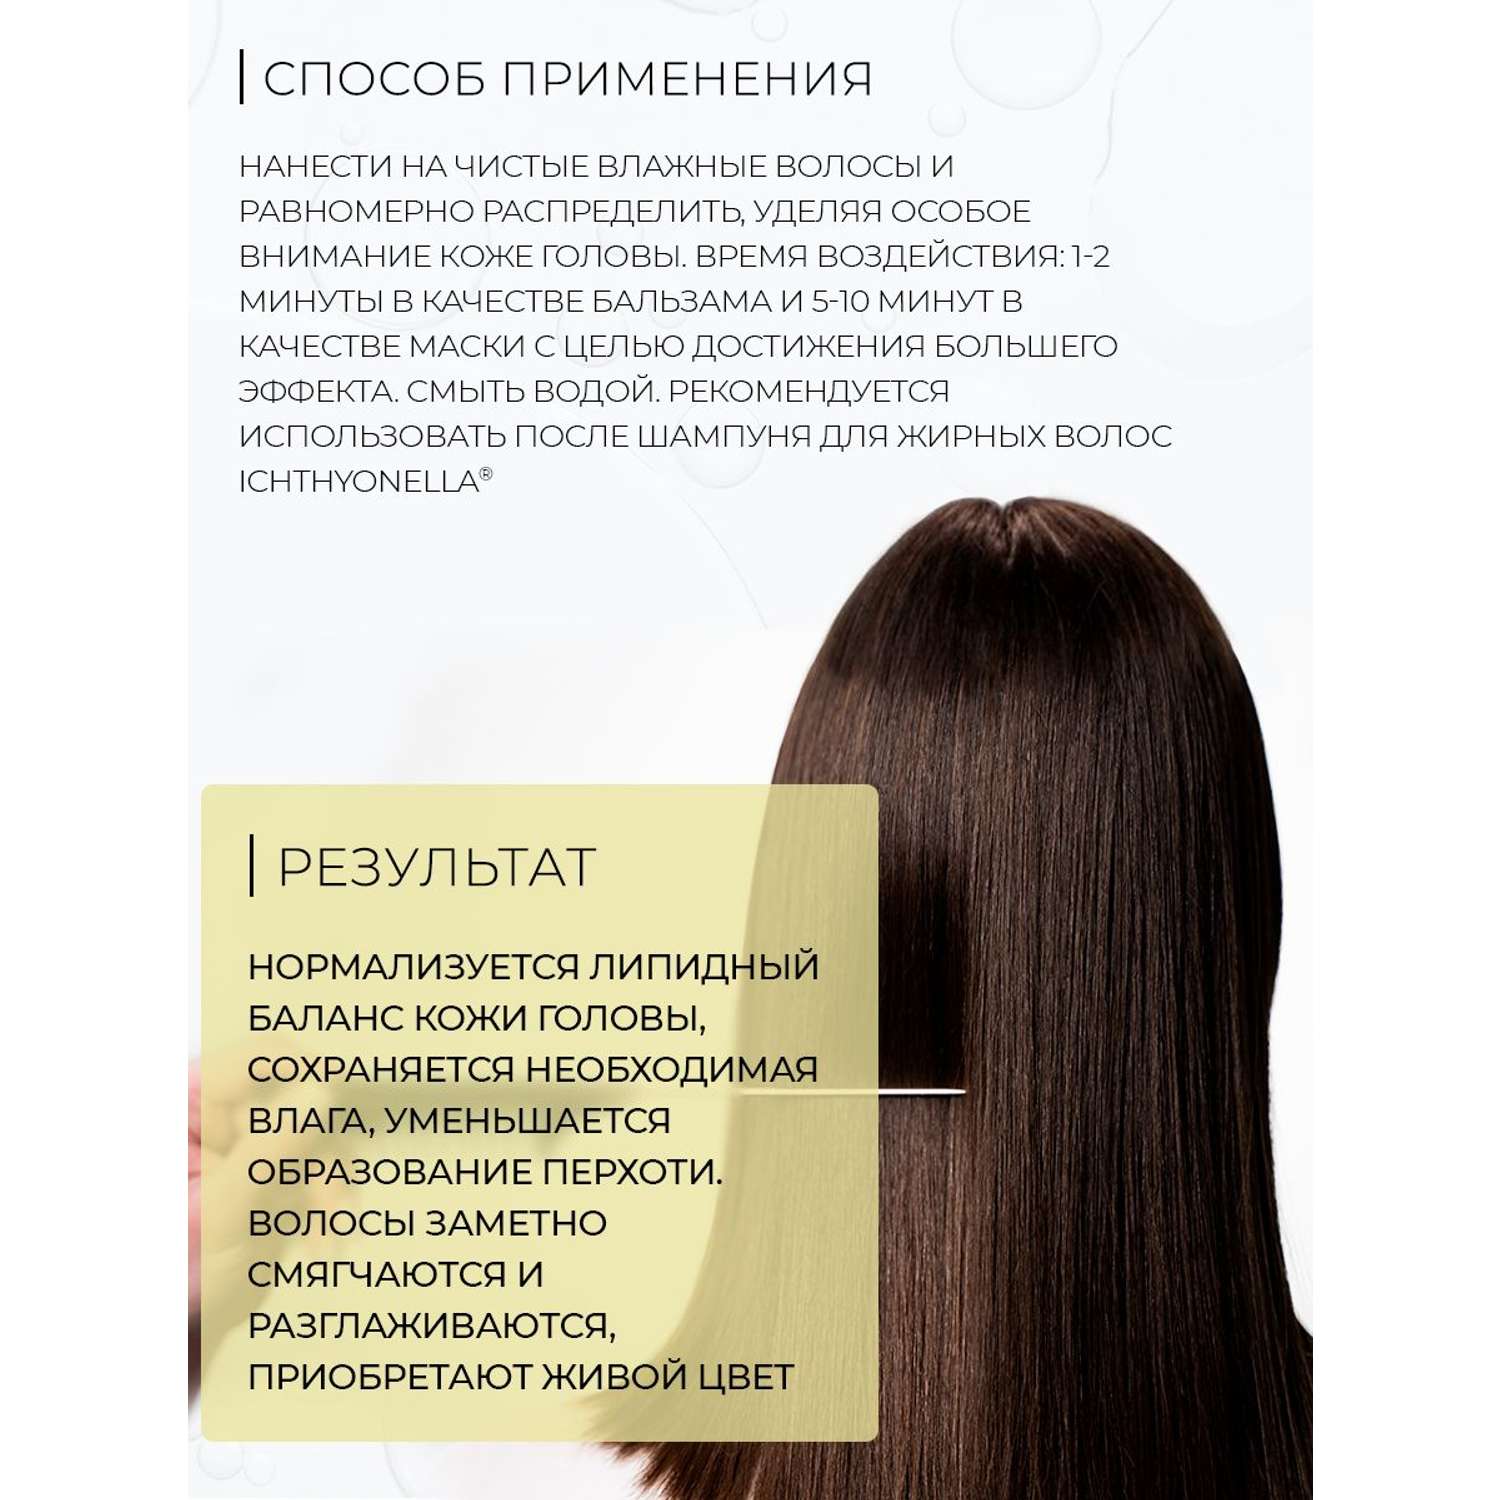 Маска-бальзам для волос Ichthyonella 200 ml - фото 5